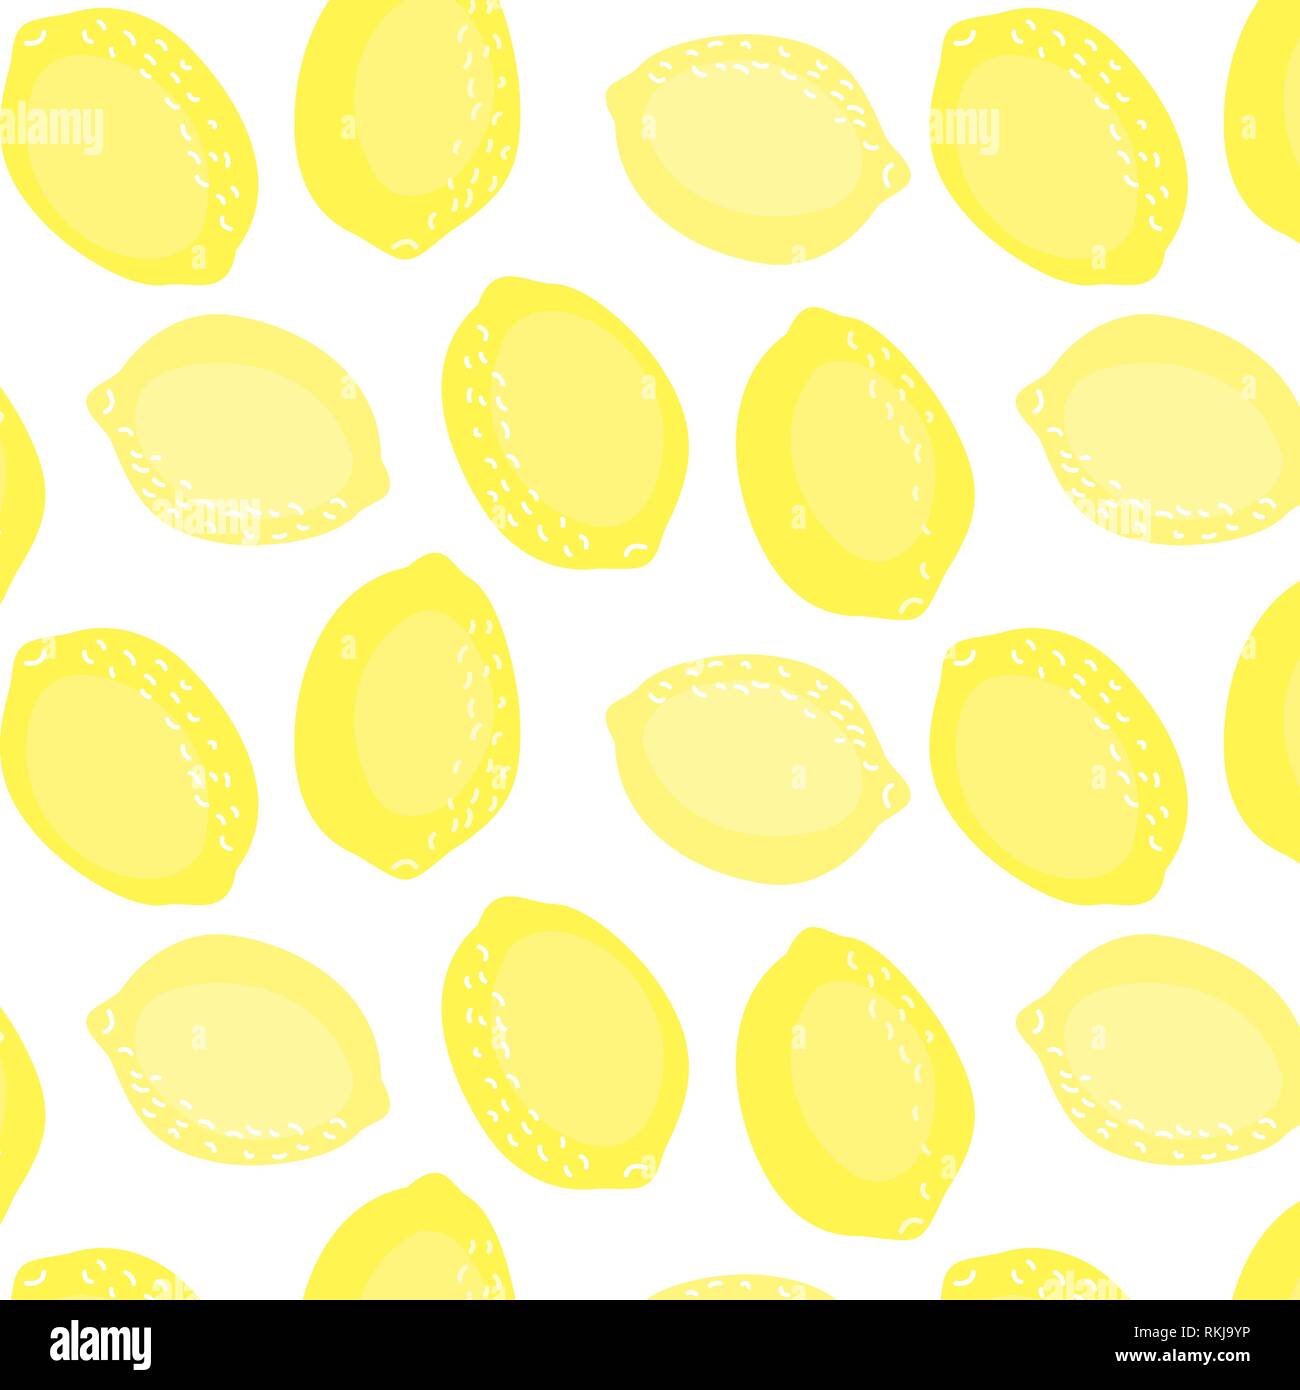 Vector lemons pattern illustration background Stock Vector